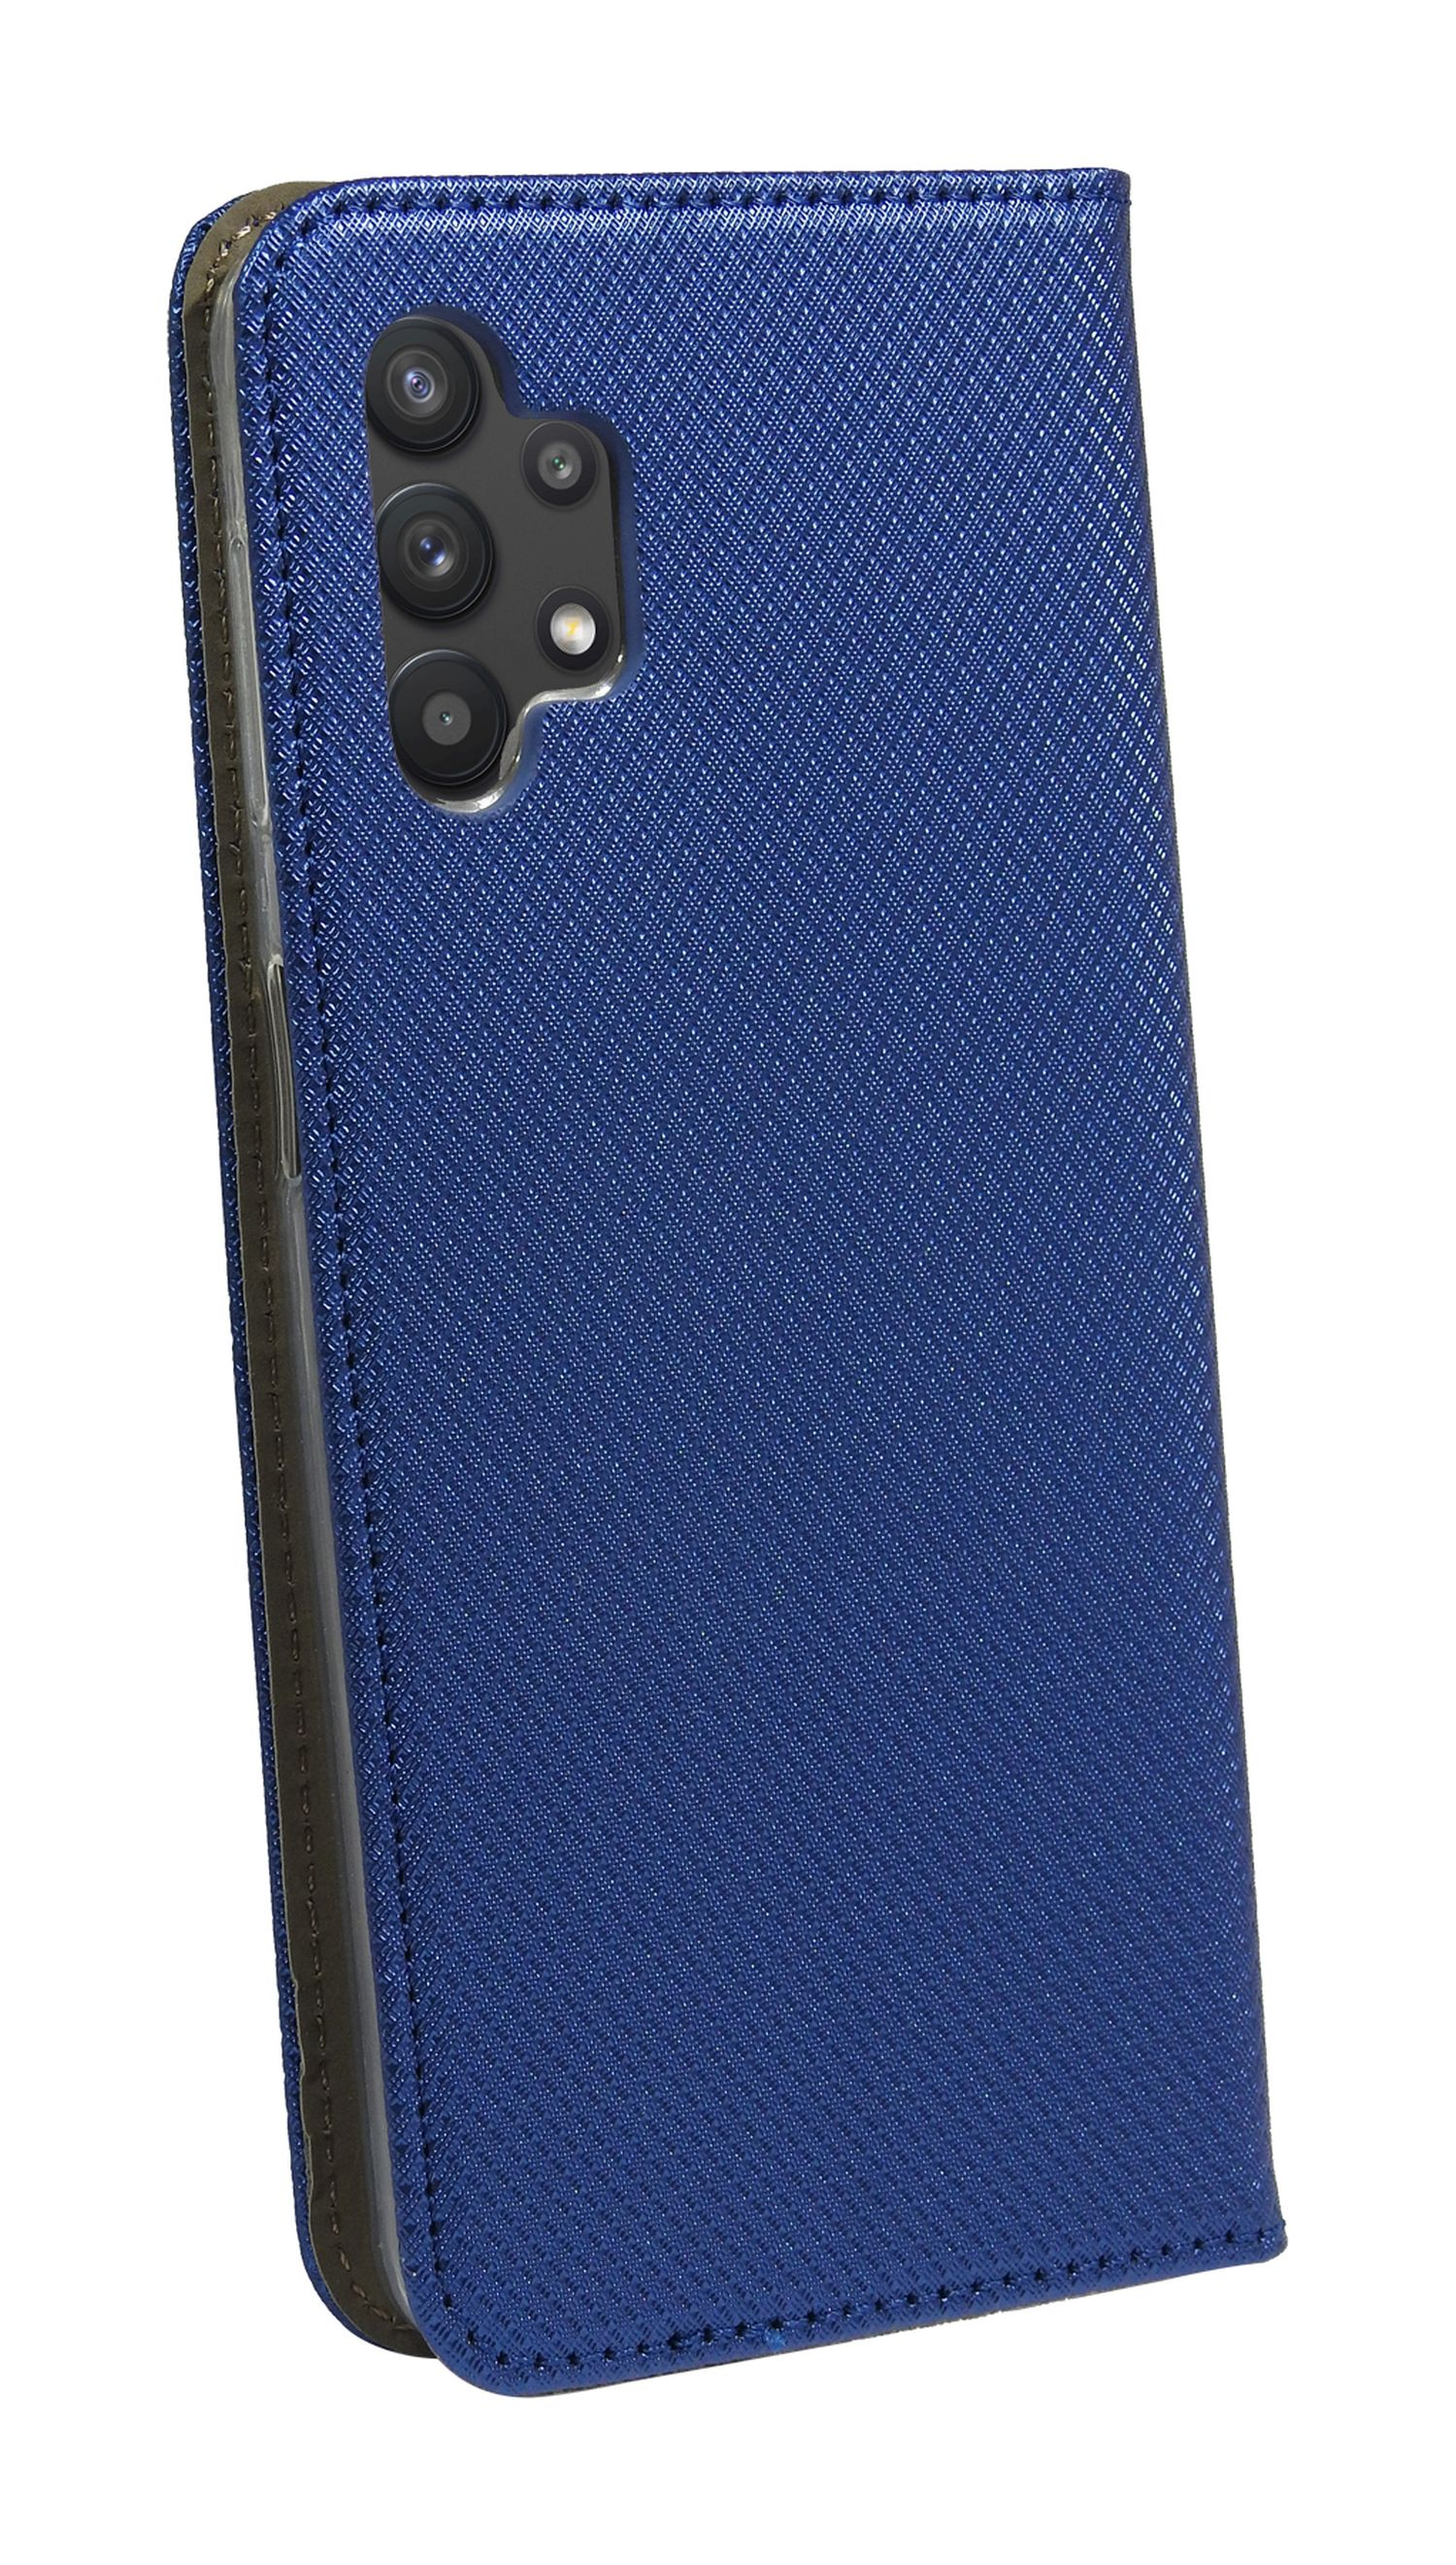 A04s, Galaxy COFI Blau Bookcover, Samsung, Tasche, Buch